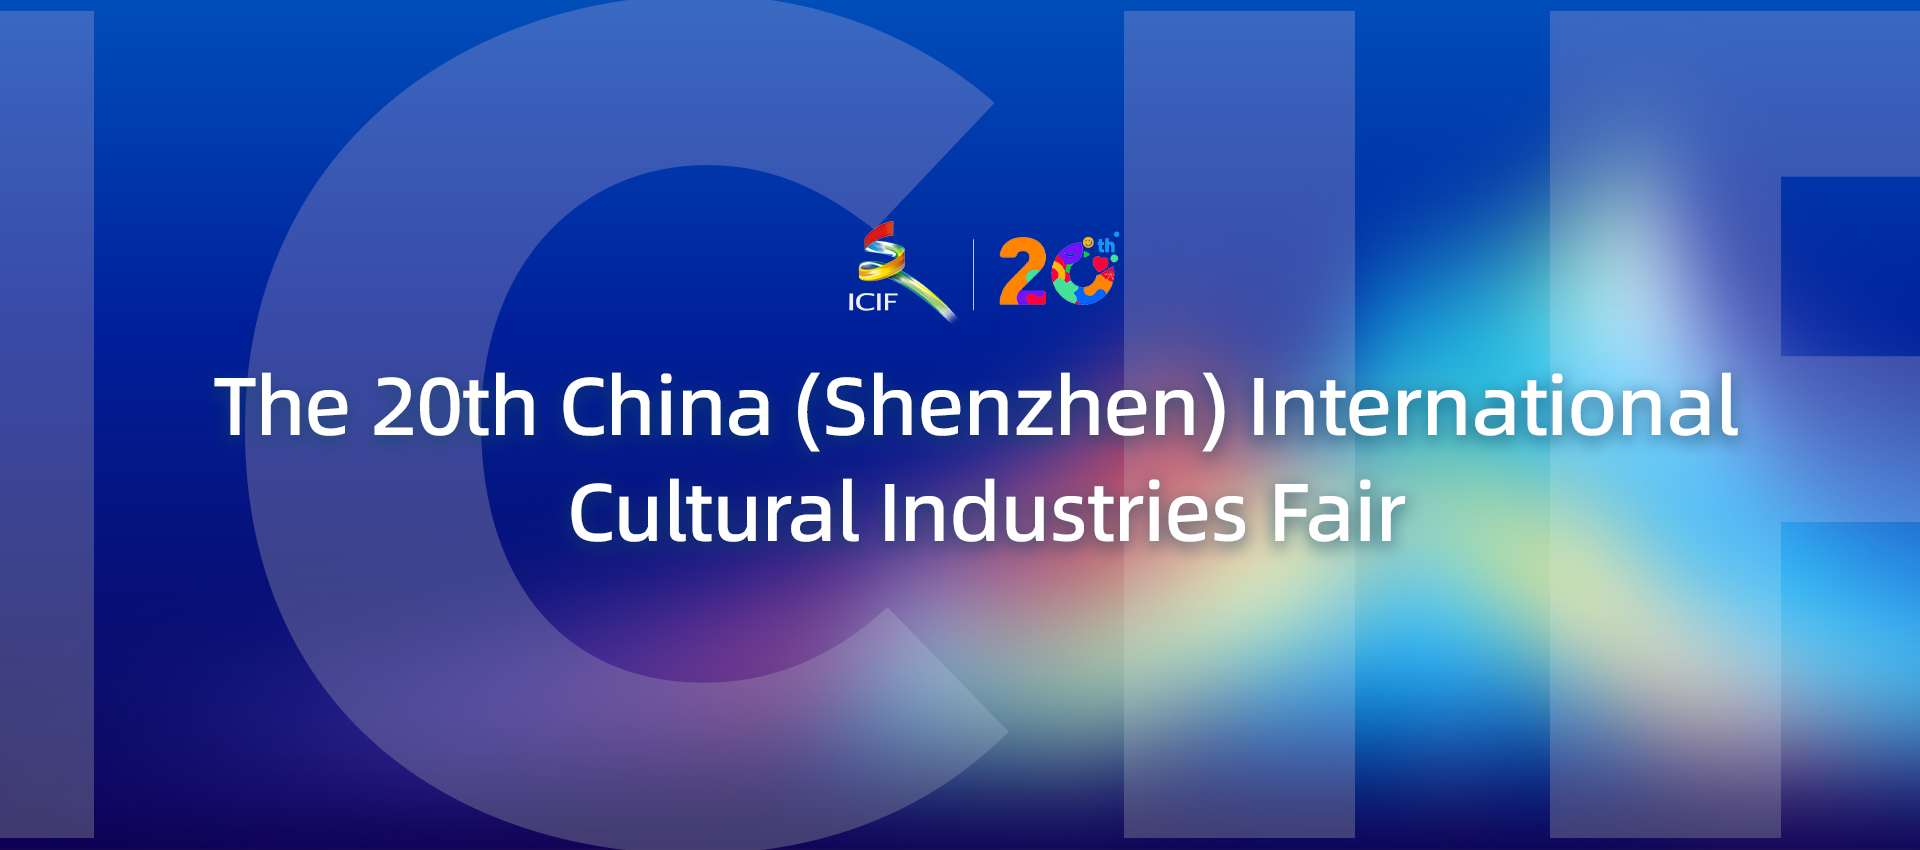 The 20th China (Shenzhen) International Cultural Industries Fair